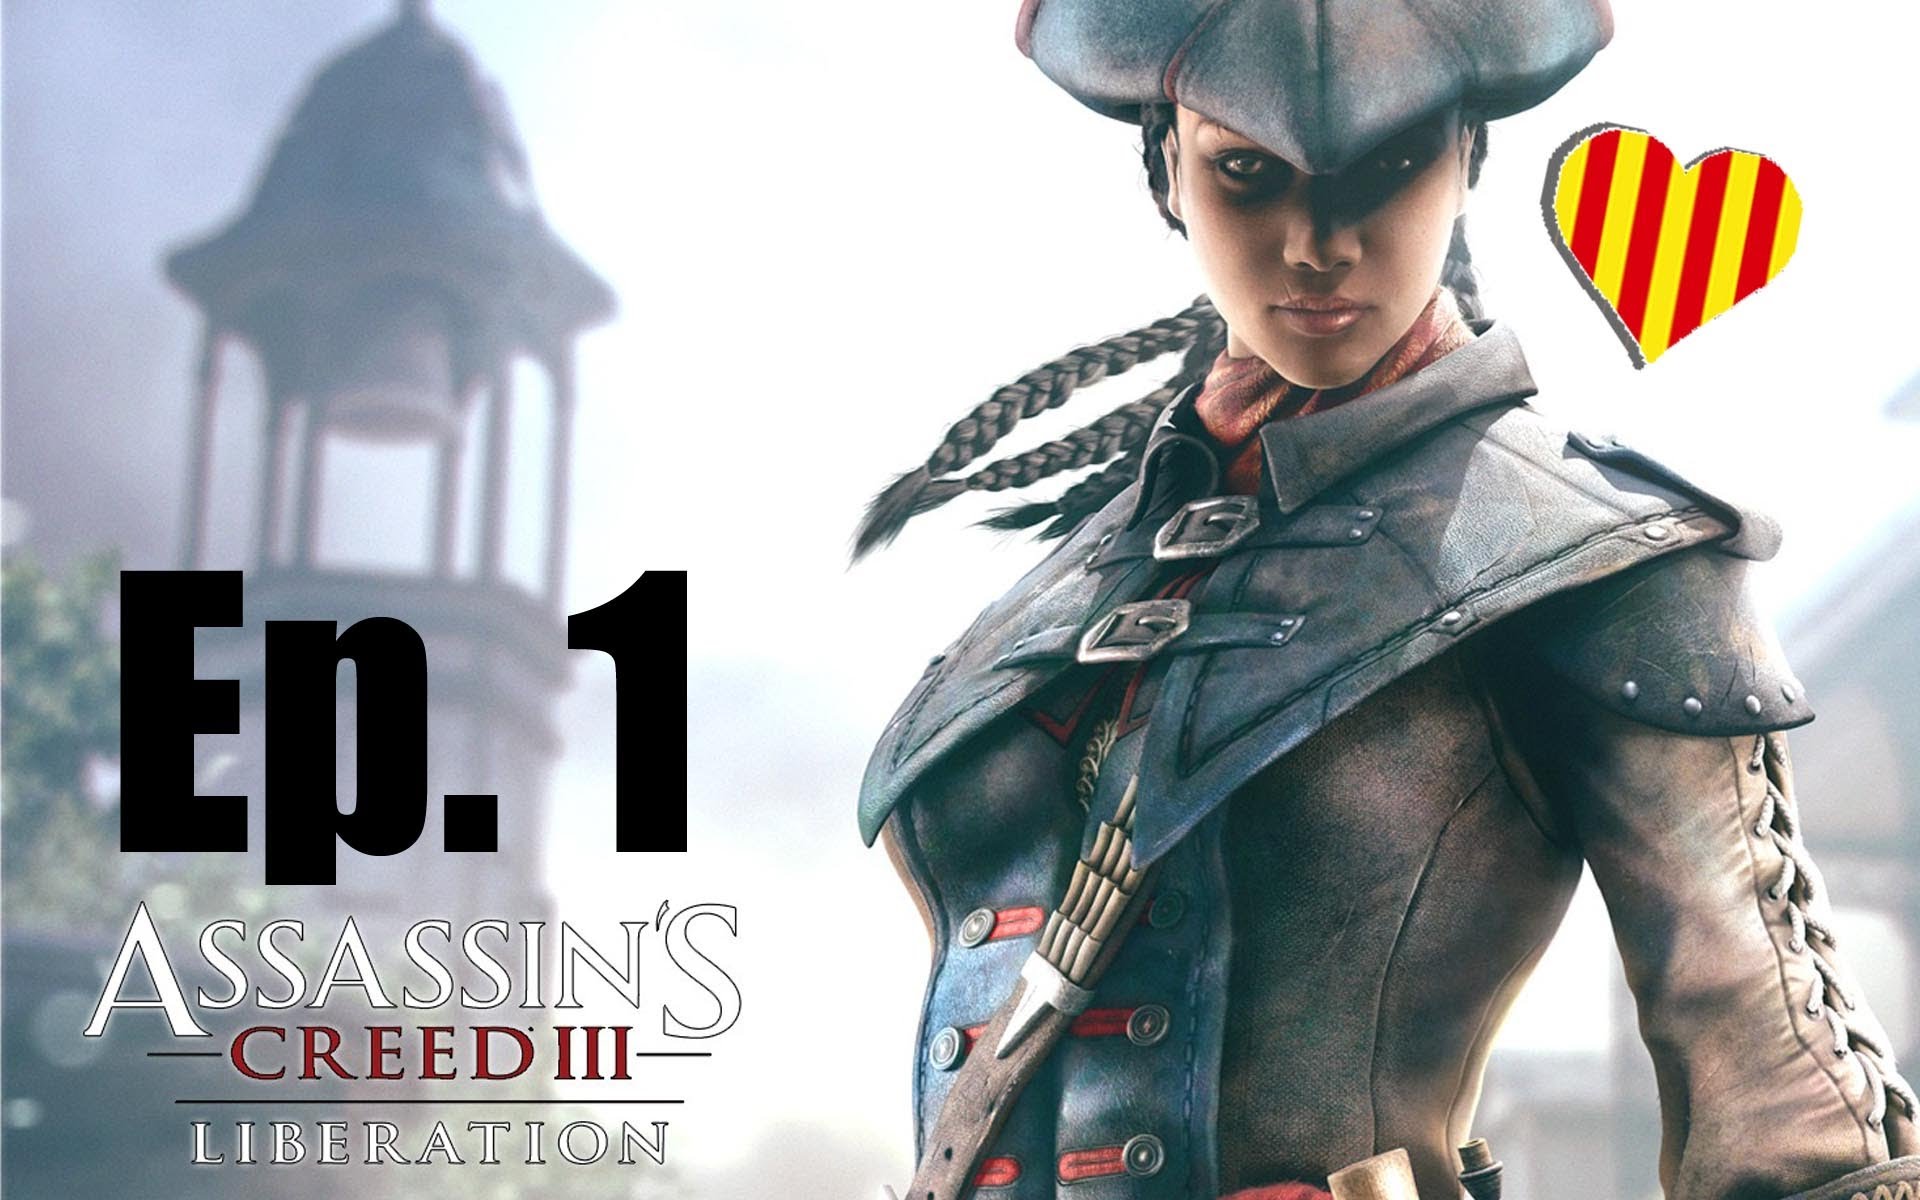 Assassin's Creed III Liberation Gameplay Ep.1 Racisme per tot arreu de alertajocs